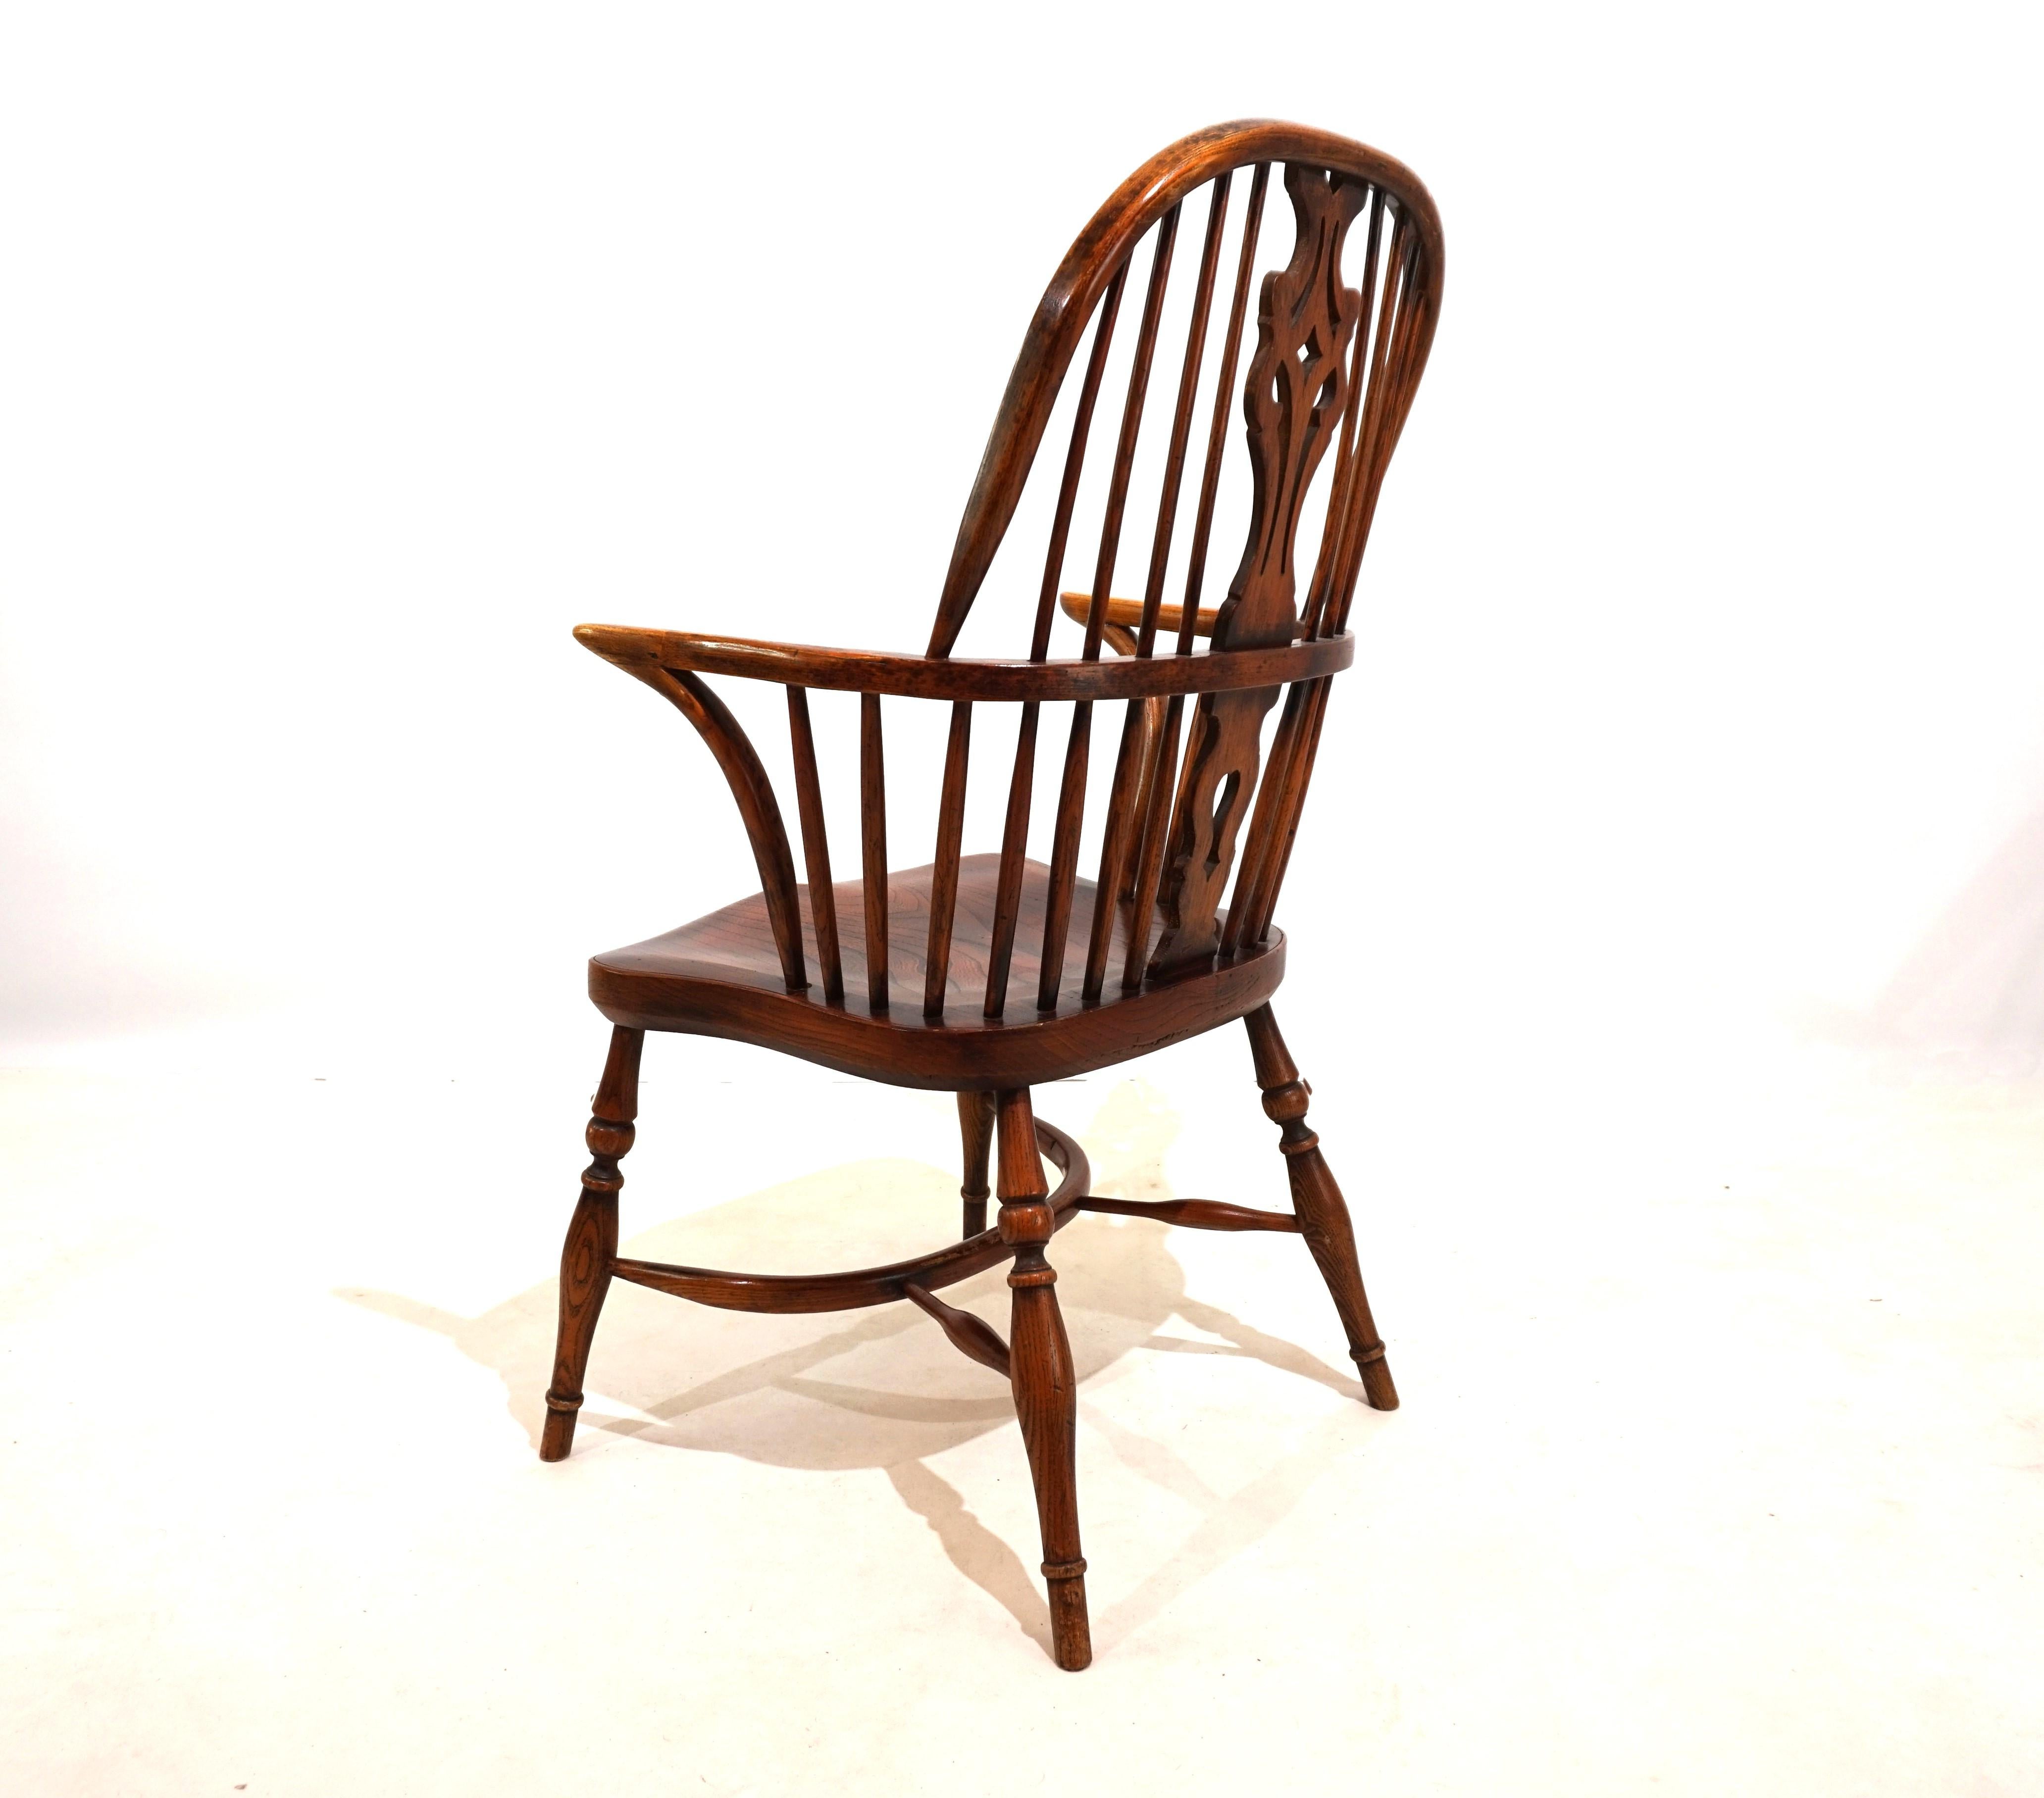 Dieser Windsor-Stuhl in der Sesselversion mit Rückenlehnen ist in sehr gutem Zustand mit einer fantastischen Alterspatina. Das Designelement der Rückenlehne und die schlichten und filigranen Streben verleihen dem Stuhl ein exklusives Aussehen. Im